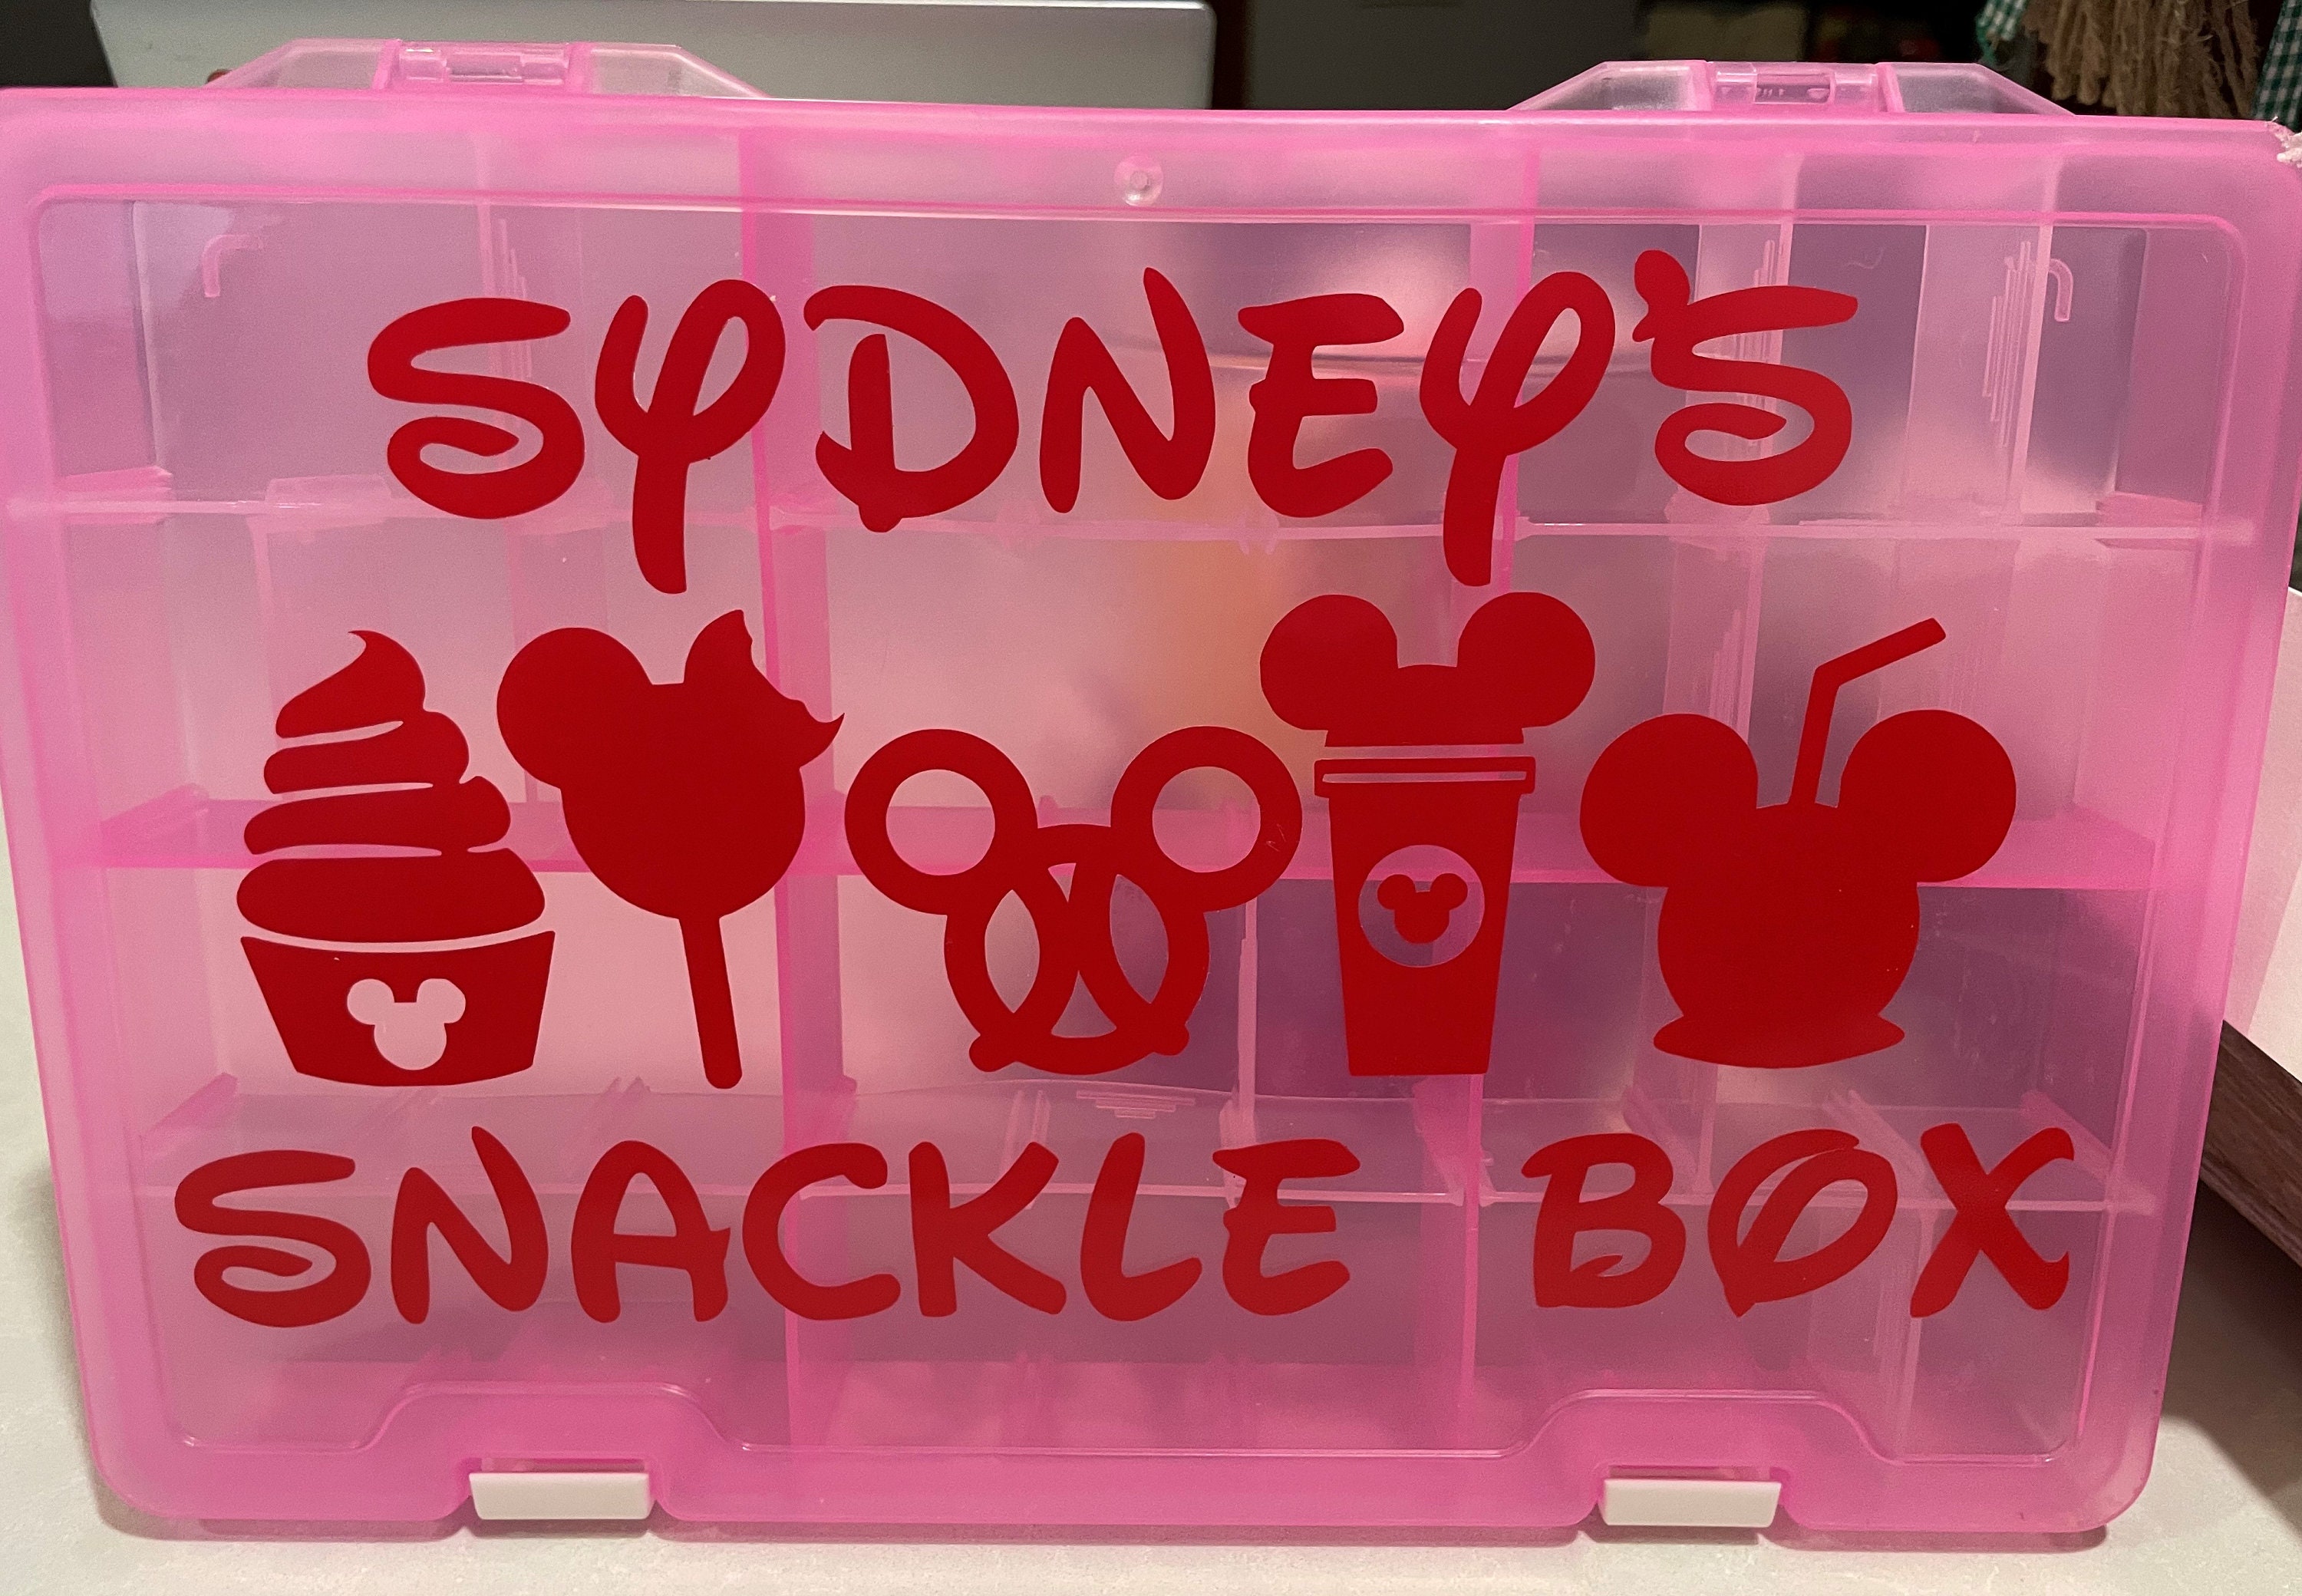 Pink Tackle Box 